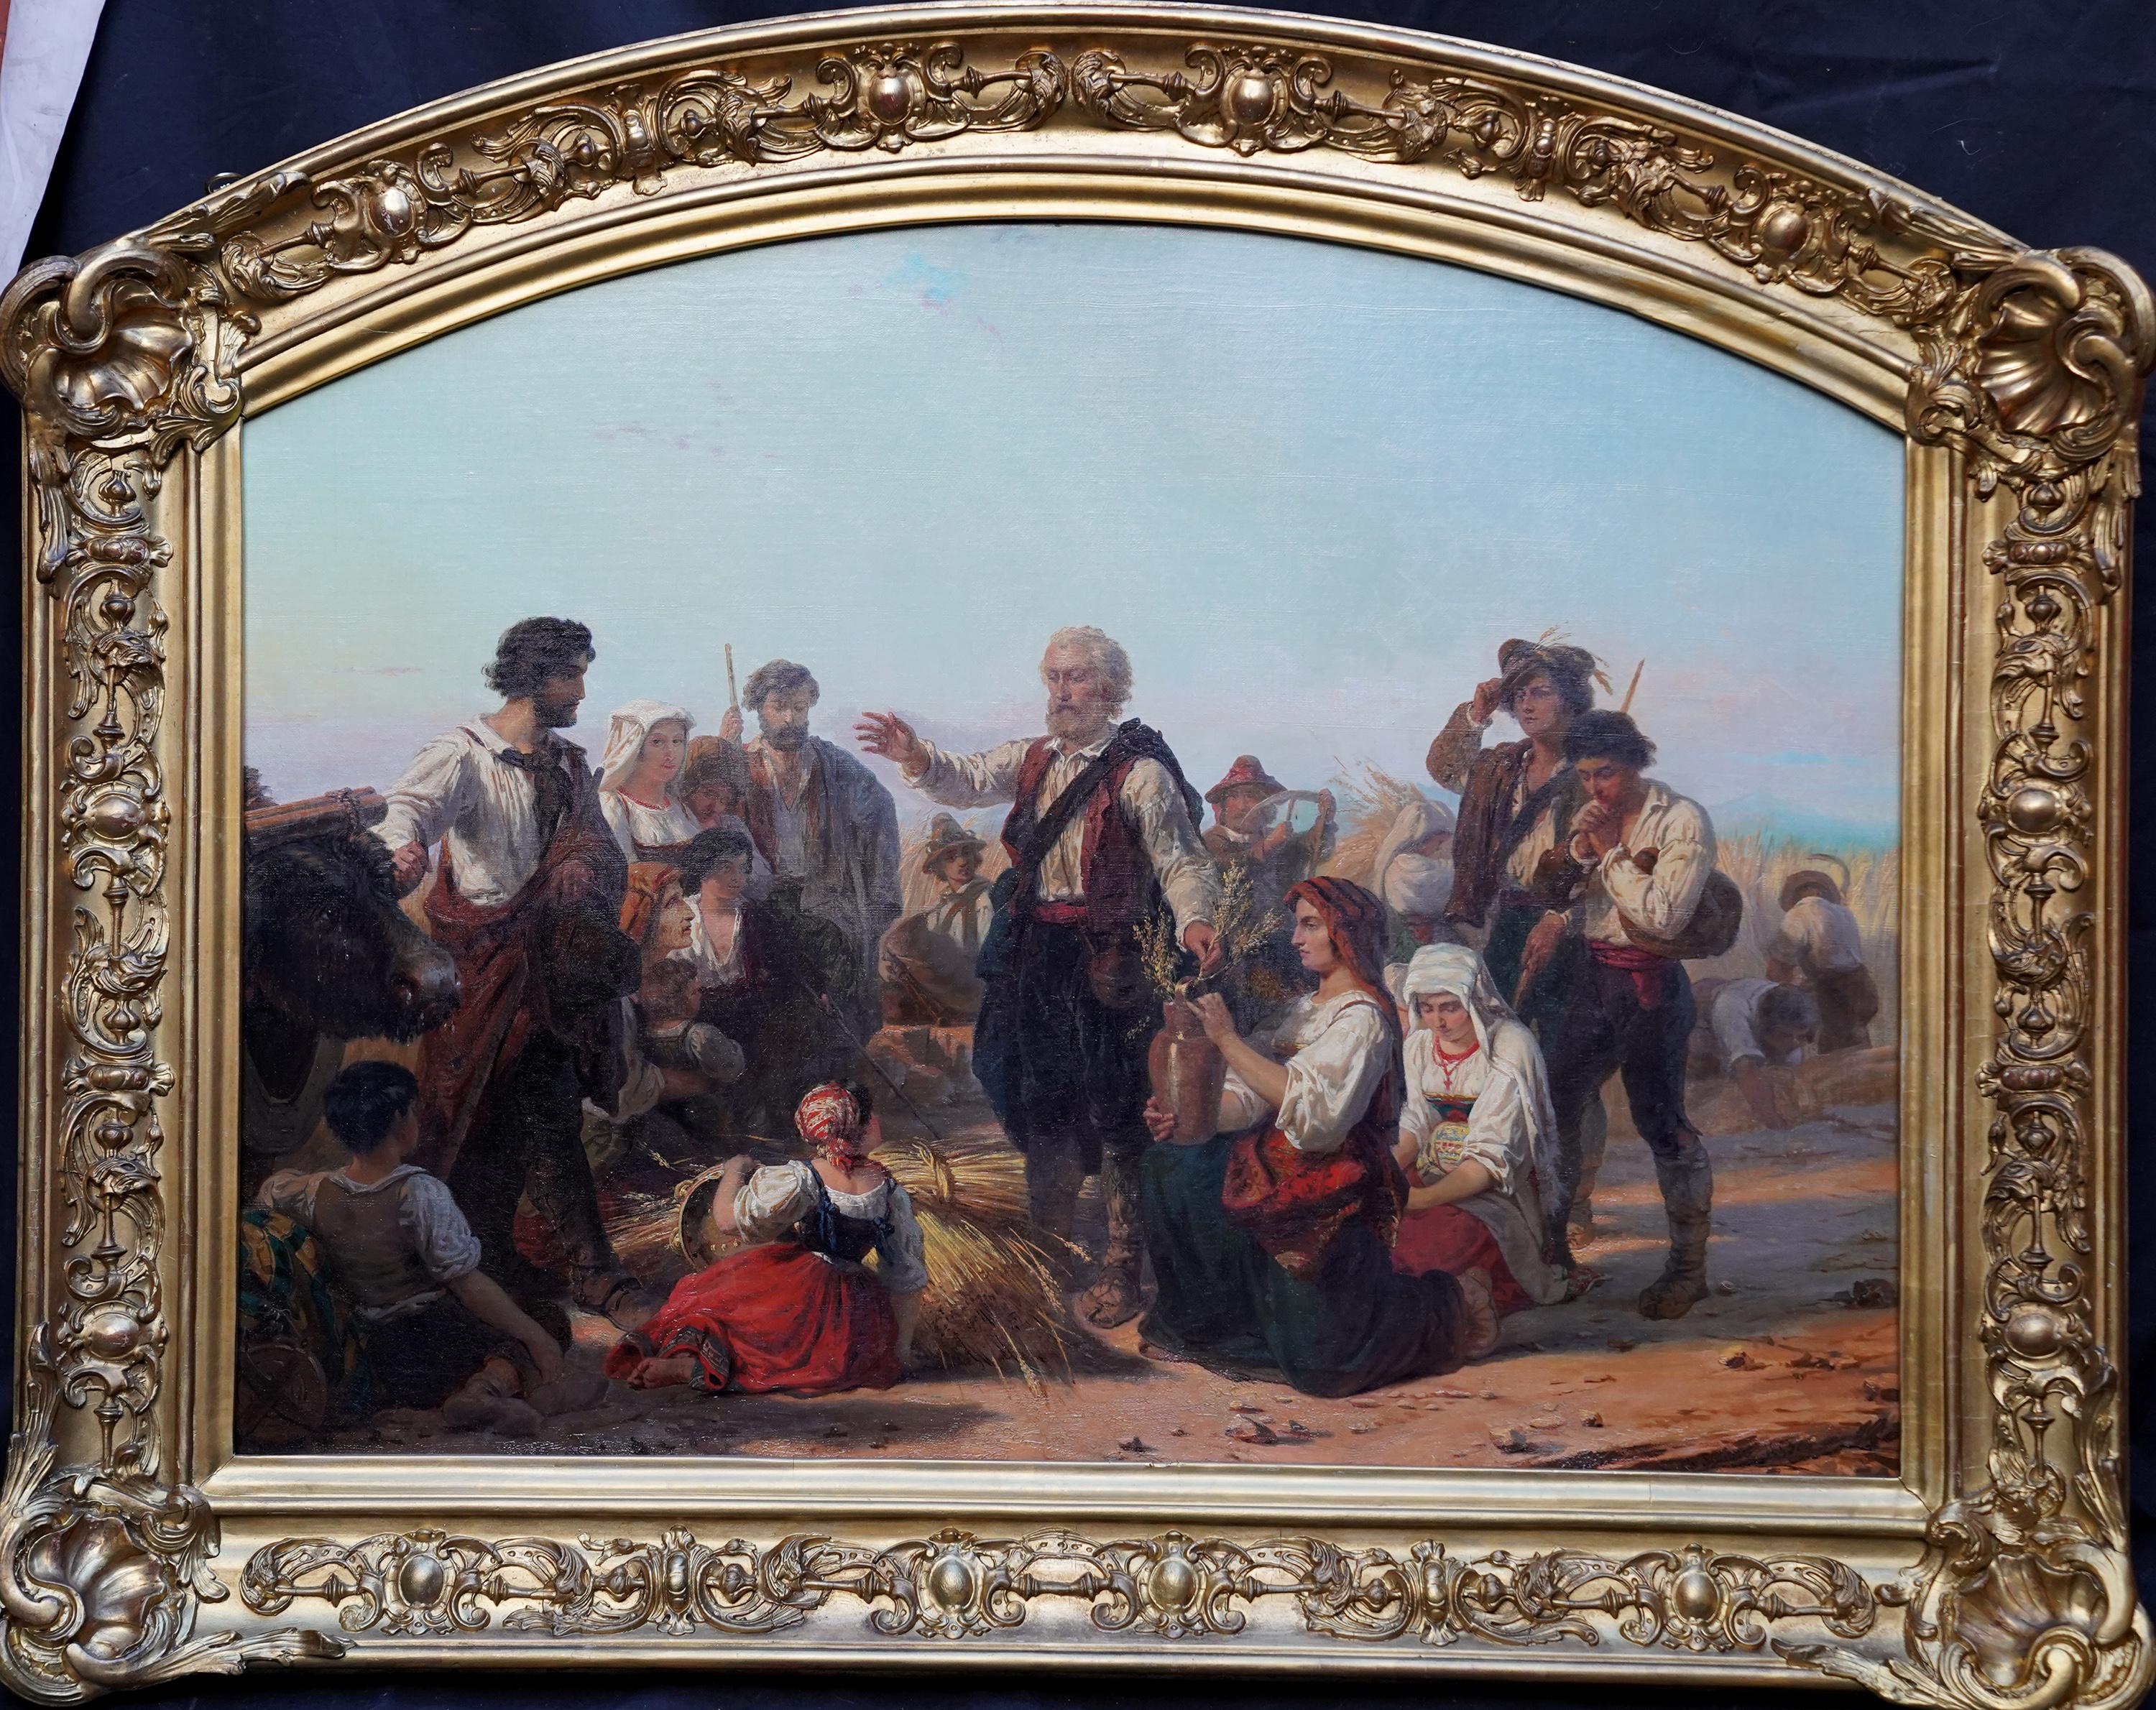 Blessing the Harvest - Peinture à l'huile figurative victorienne belge du 19e siècle